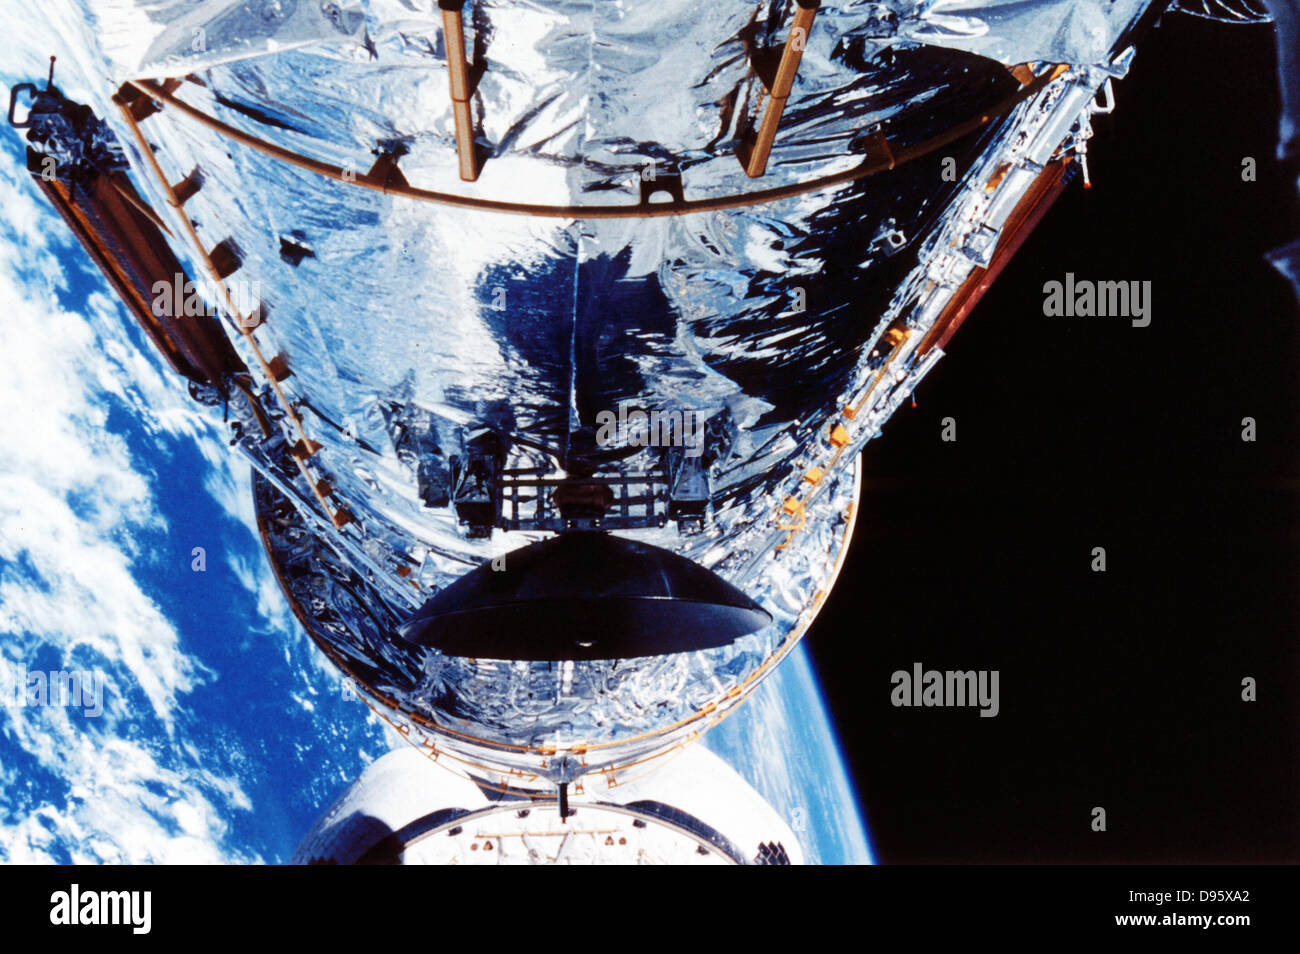 Telescopio Spaziale Hubble. Fotografia della NASA. Foto Stock